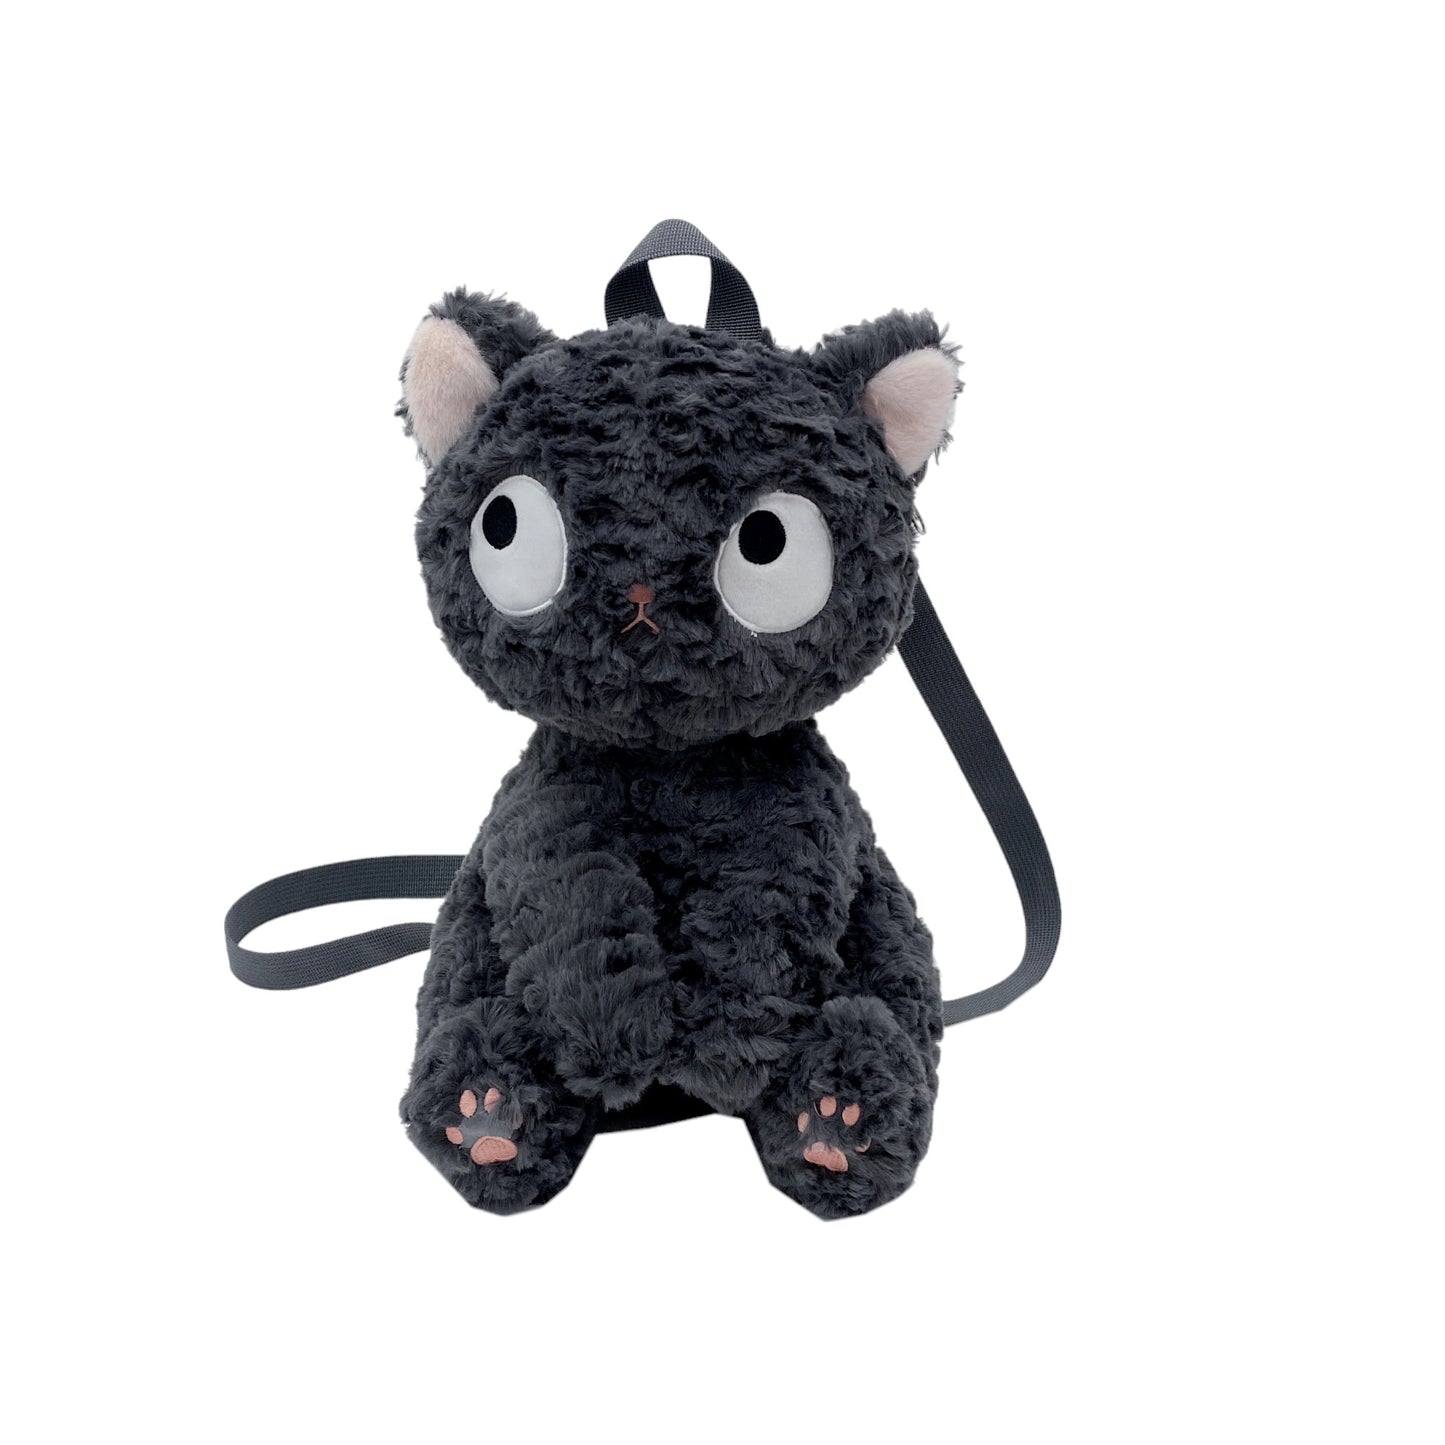 ¡Adorable bolso esponjoso de gato gris! 🐱 